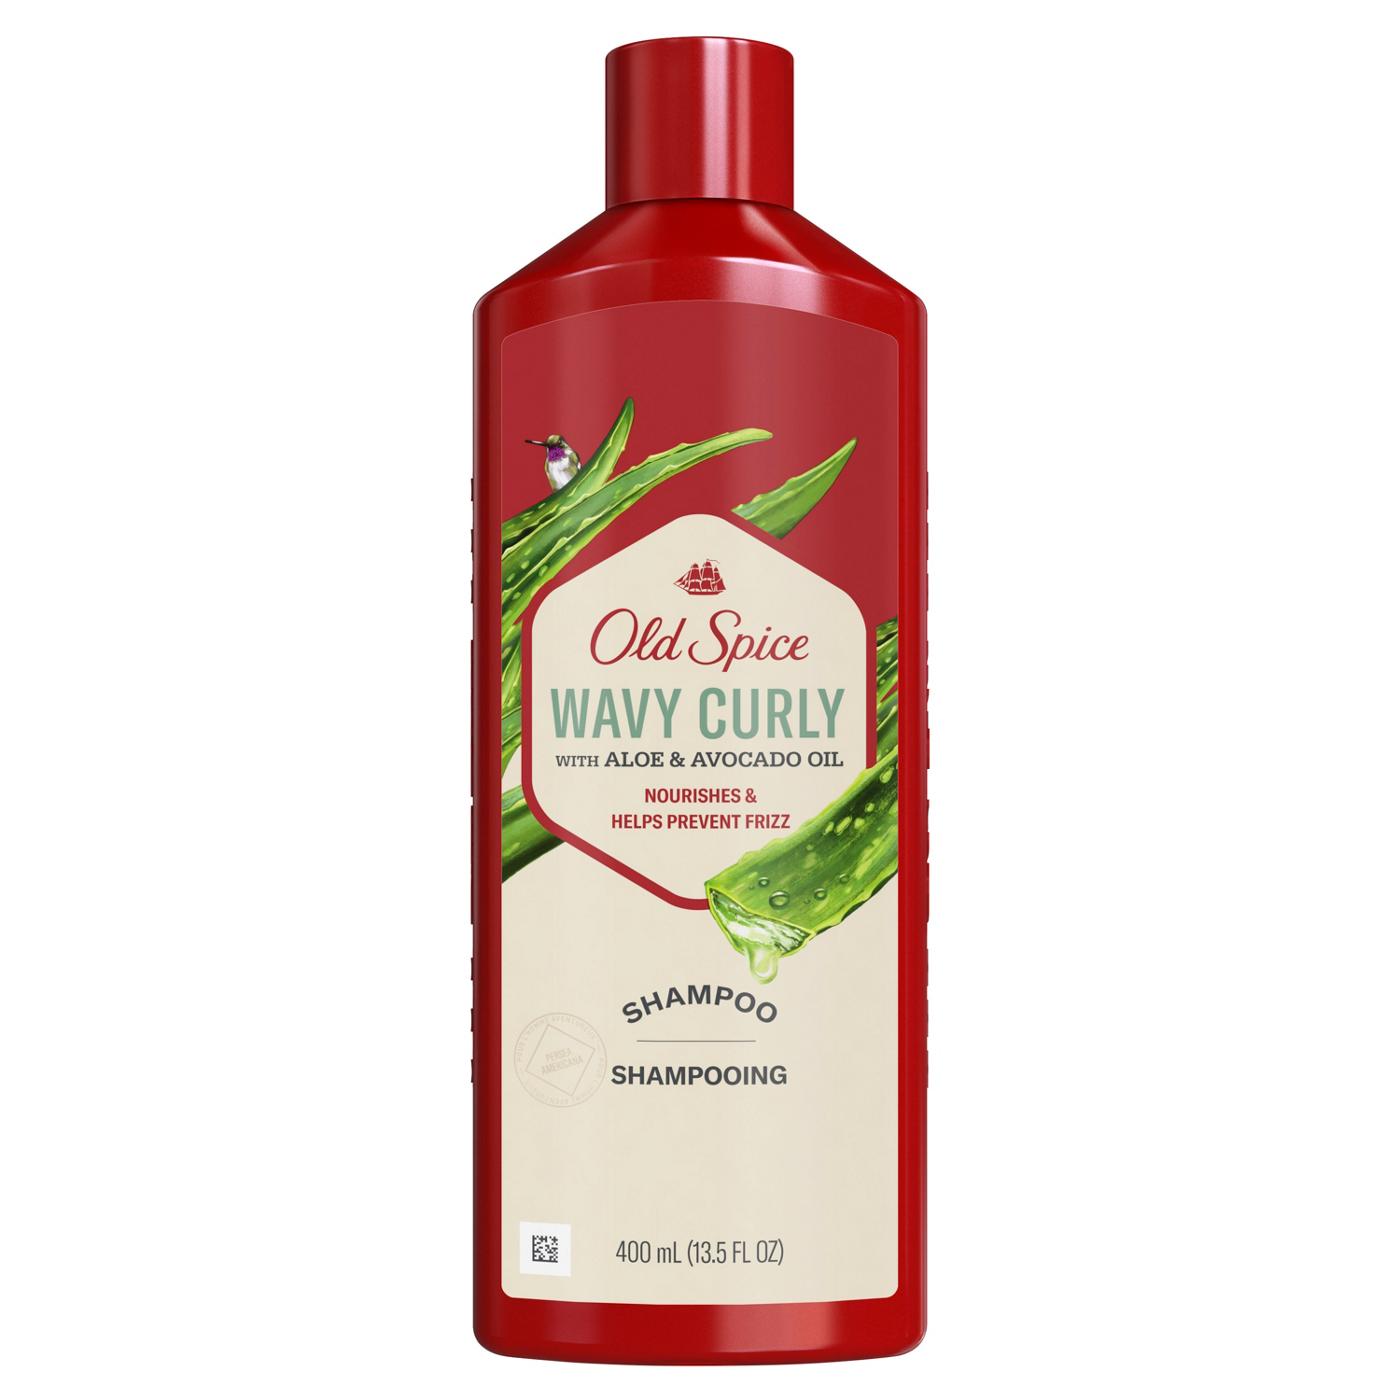 Old Spice Wavy Curly Shampoo - Aloe & Avocado Oil; image 1 of 5